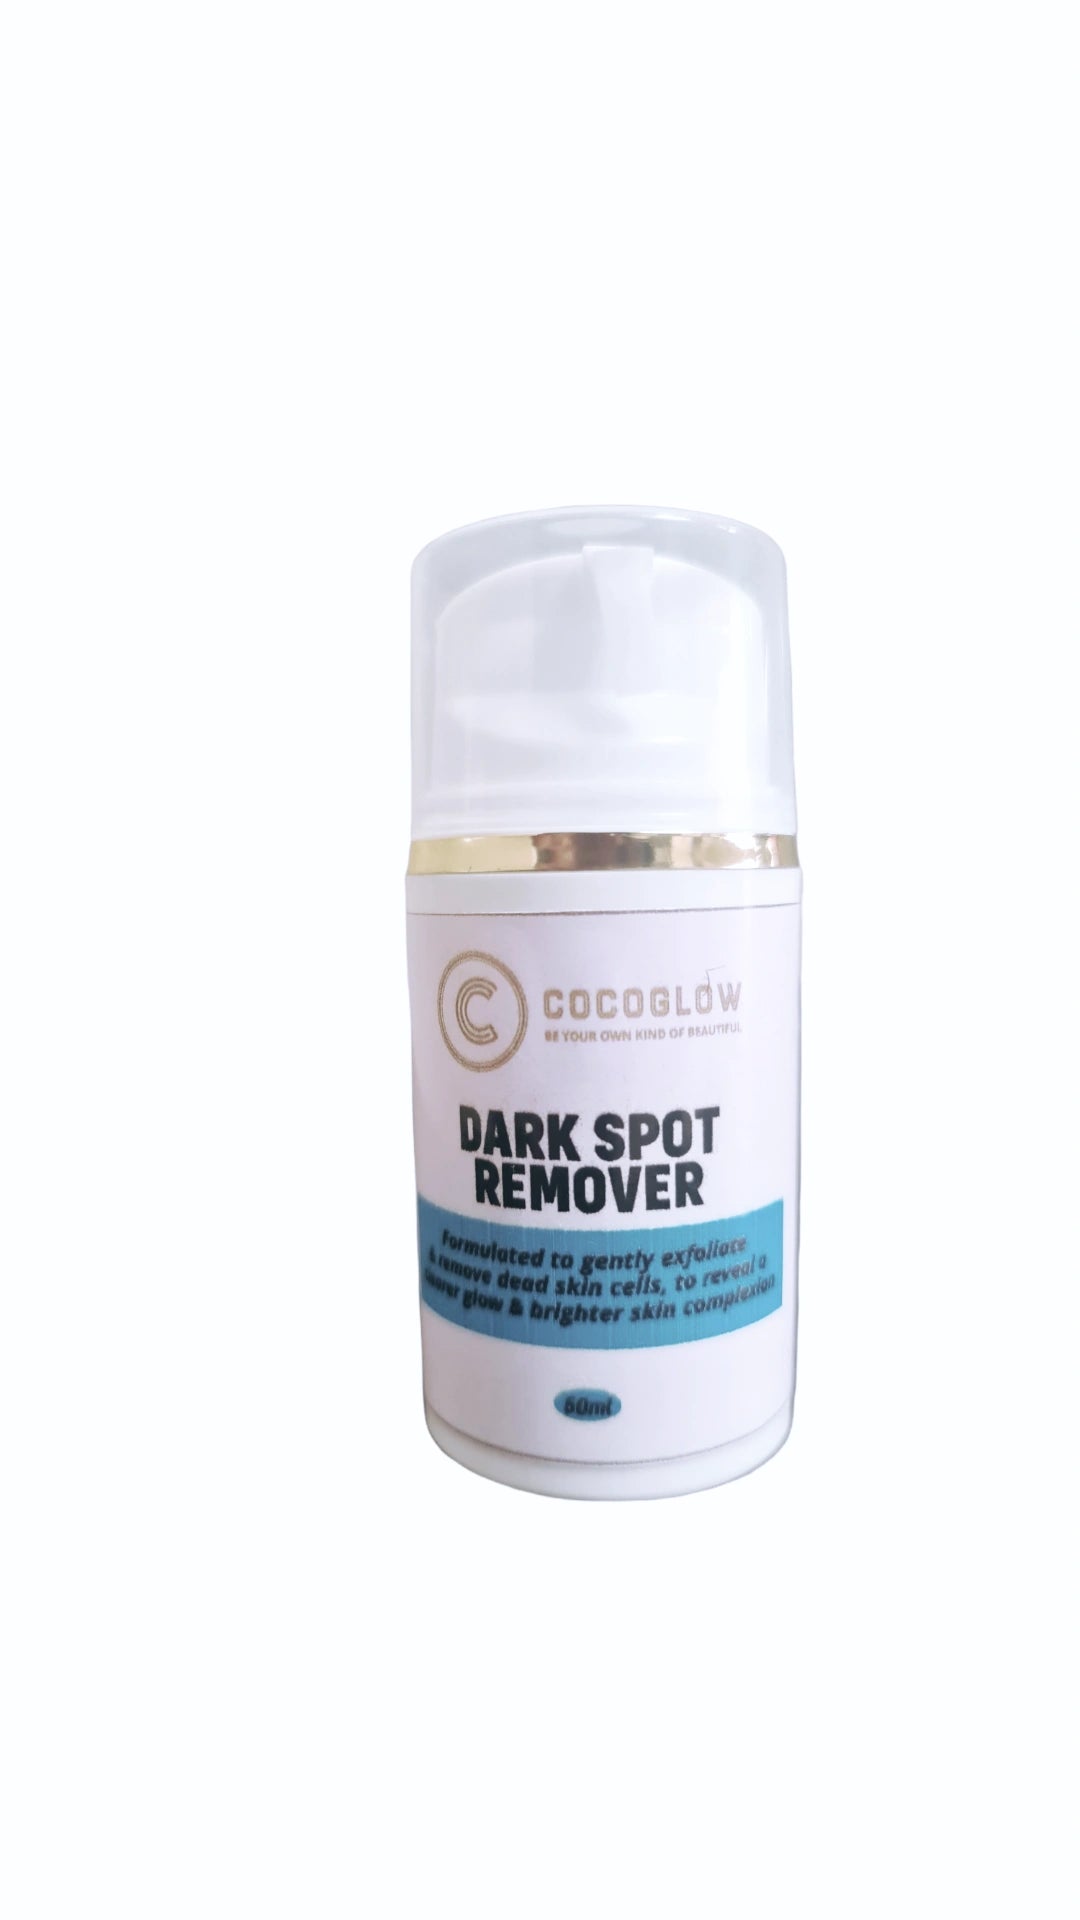 Dark spot remover cream